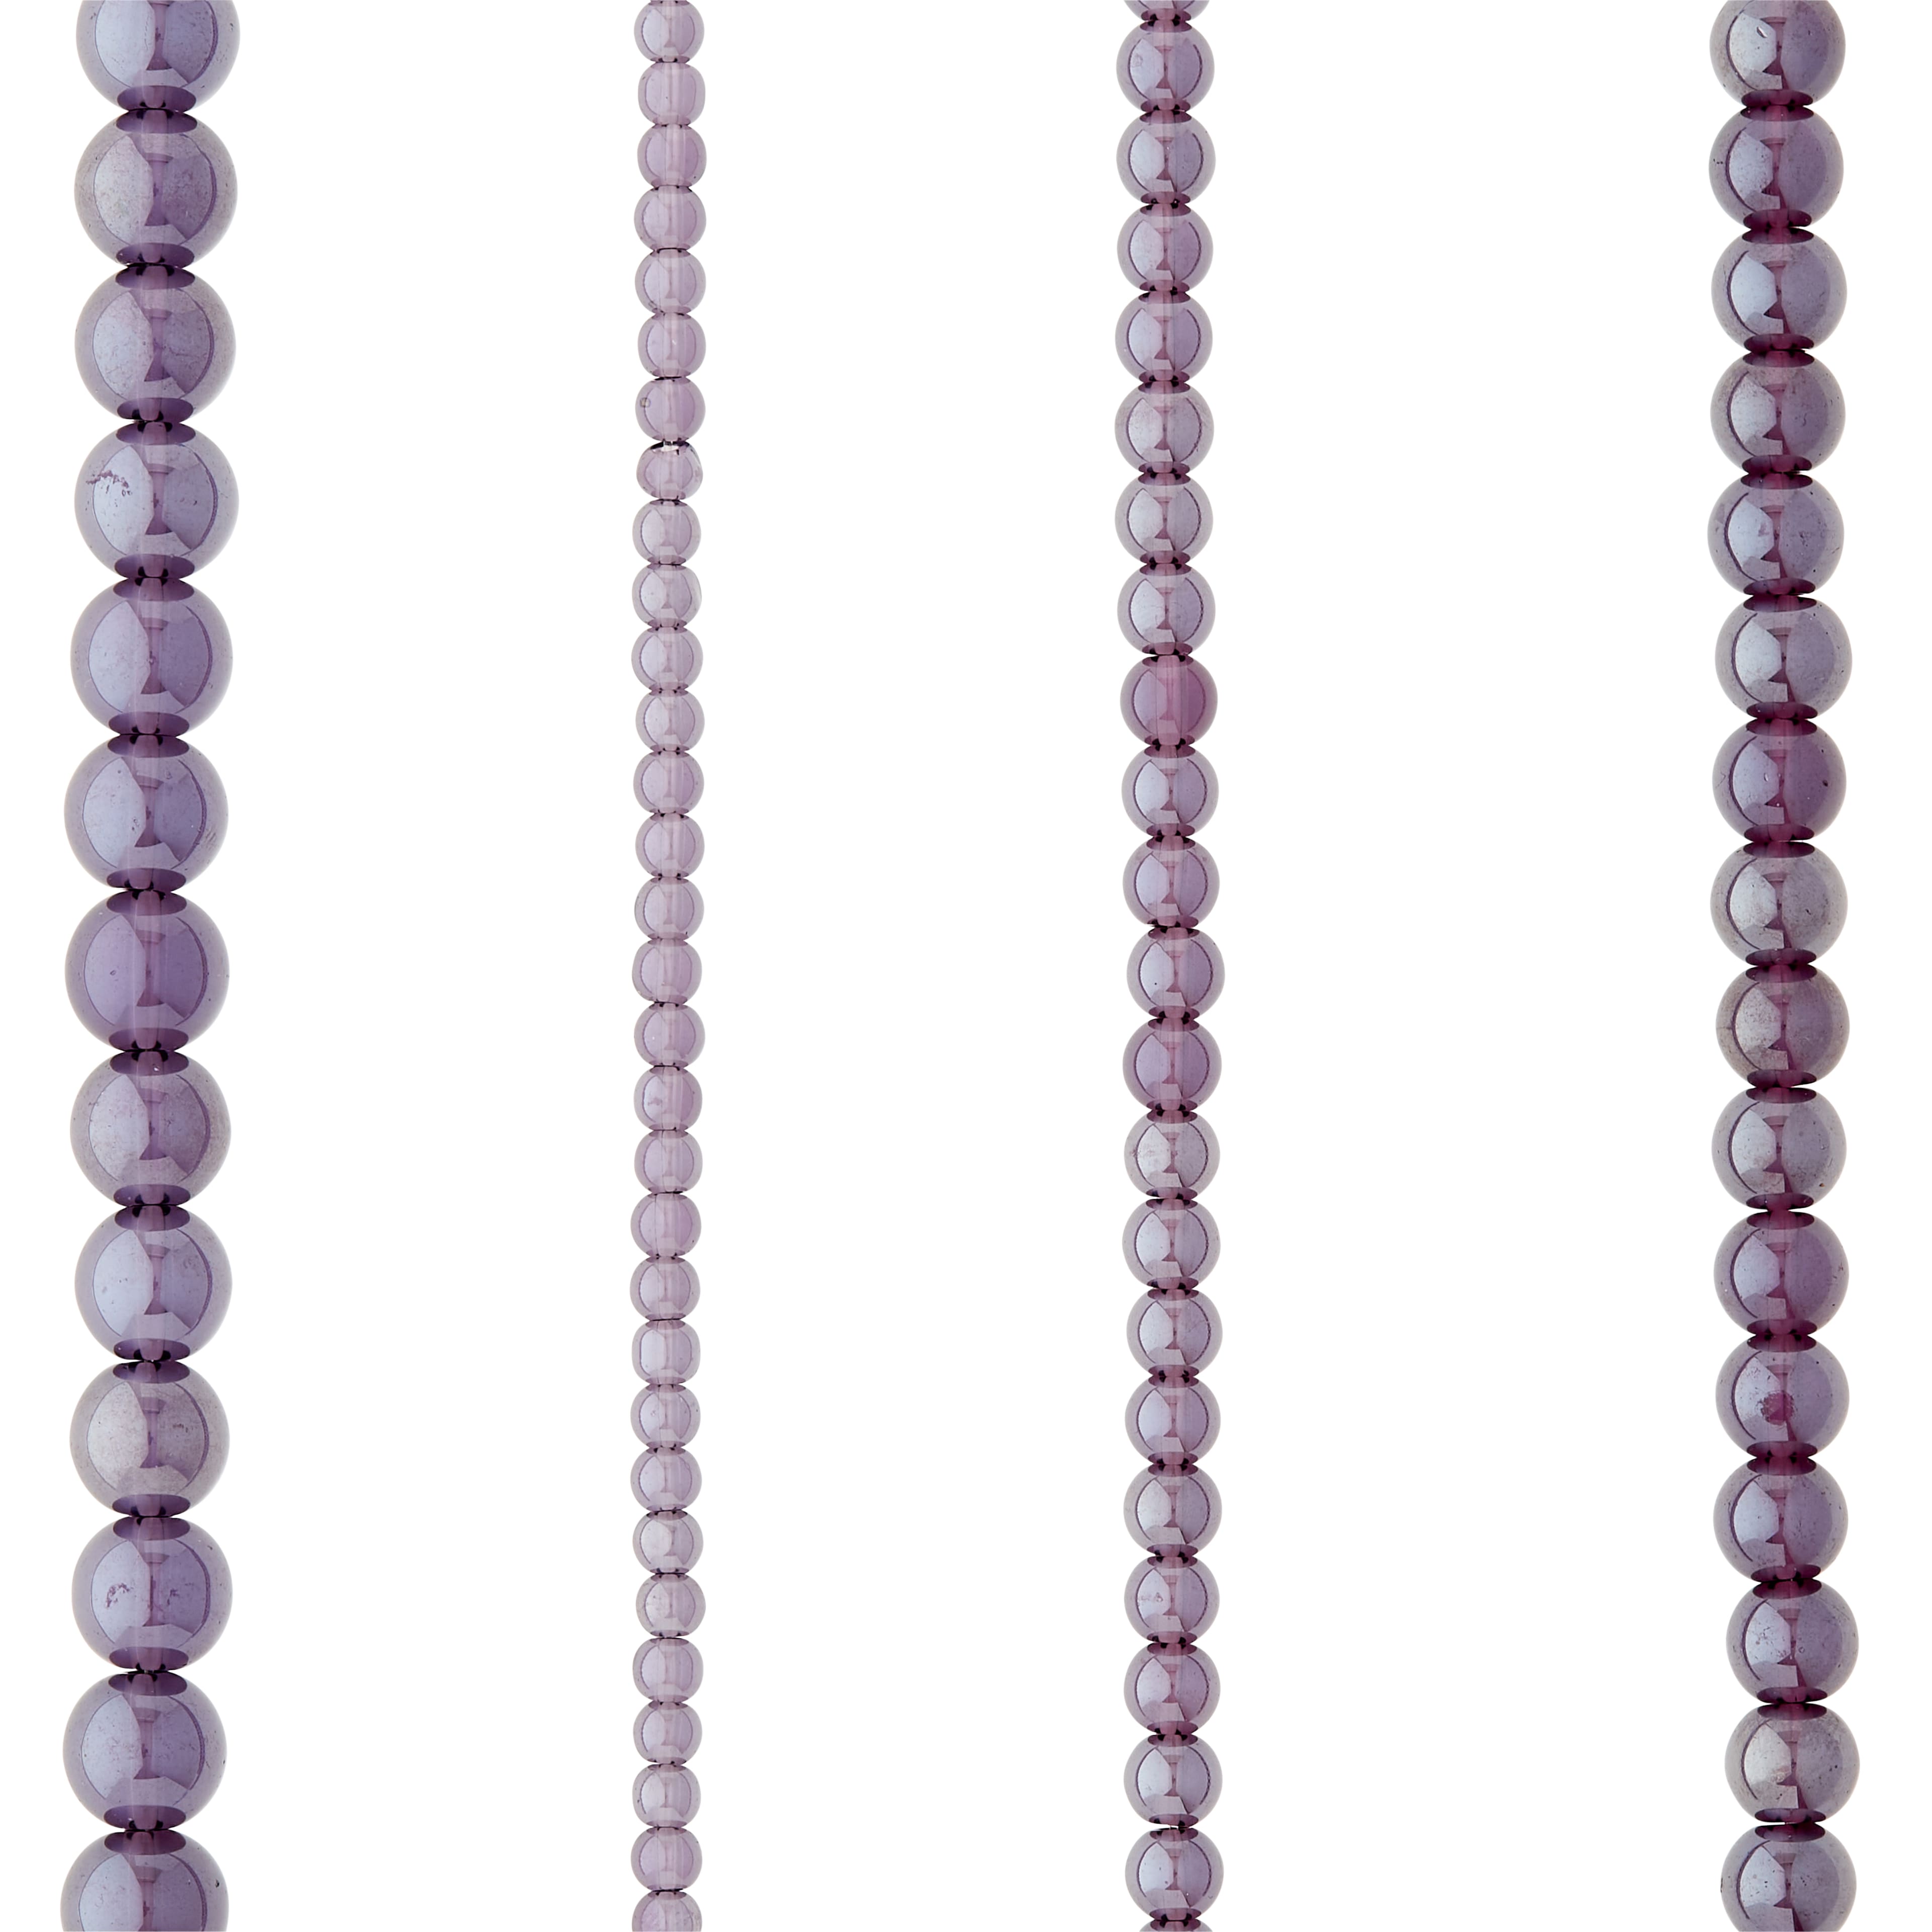 Purple Premium UV Beads, 50 Count